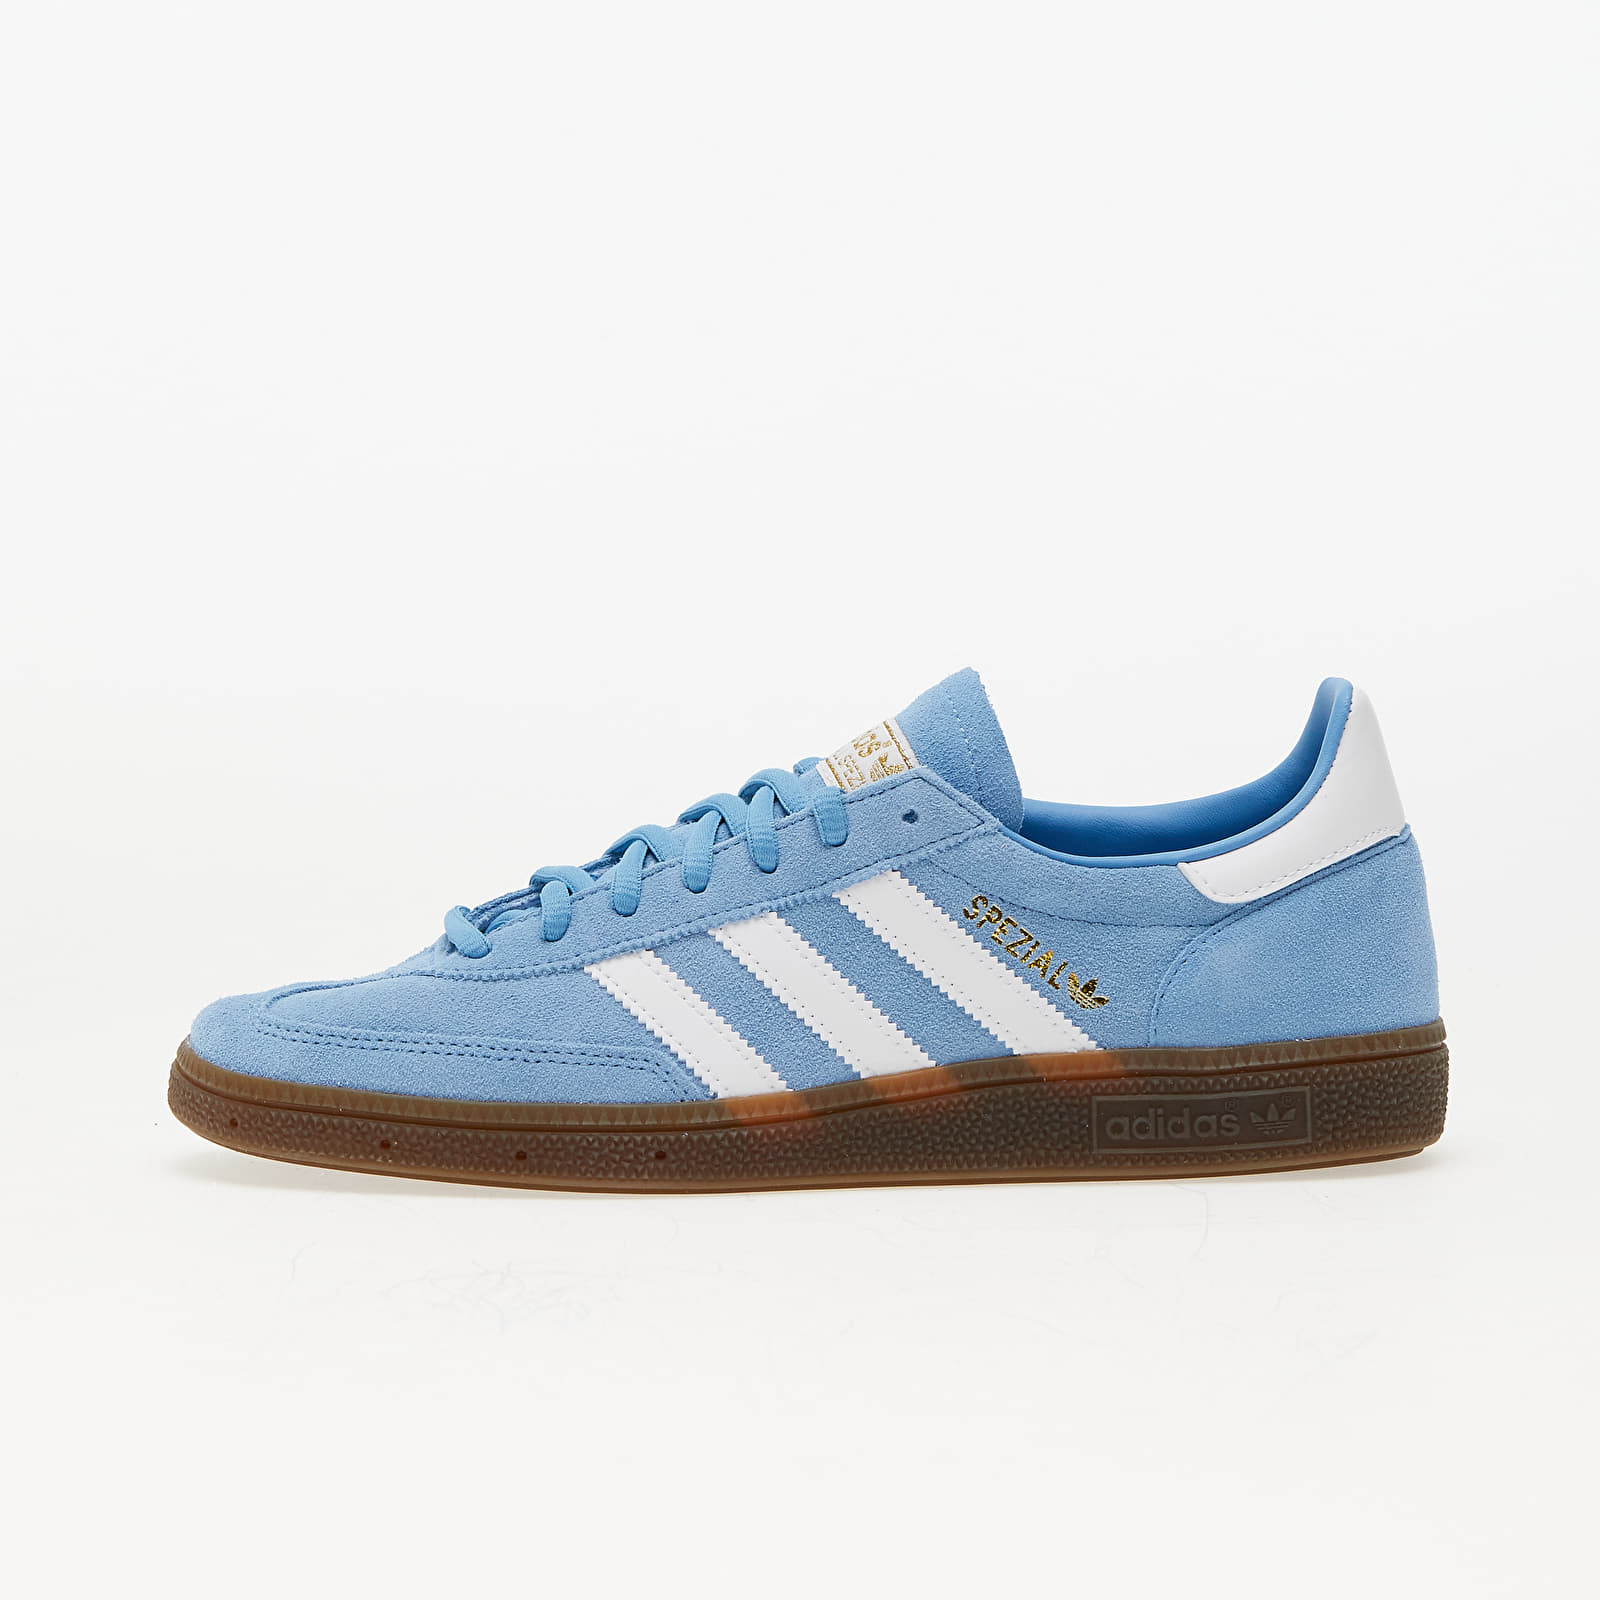 Pánske tenisky a topánky adidas Spezial Handball Light blue/ Ftw White/ Gum5